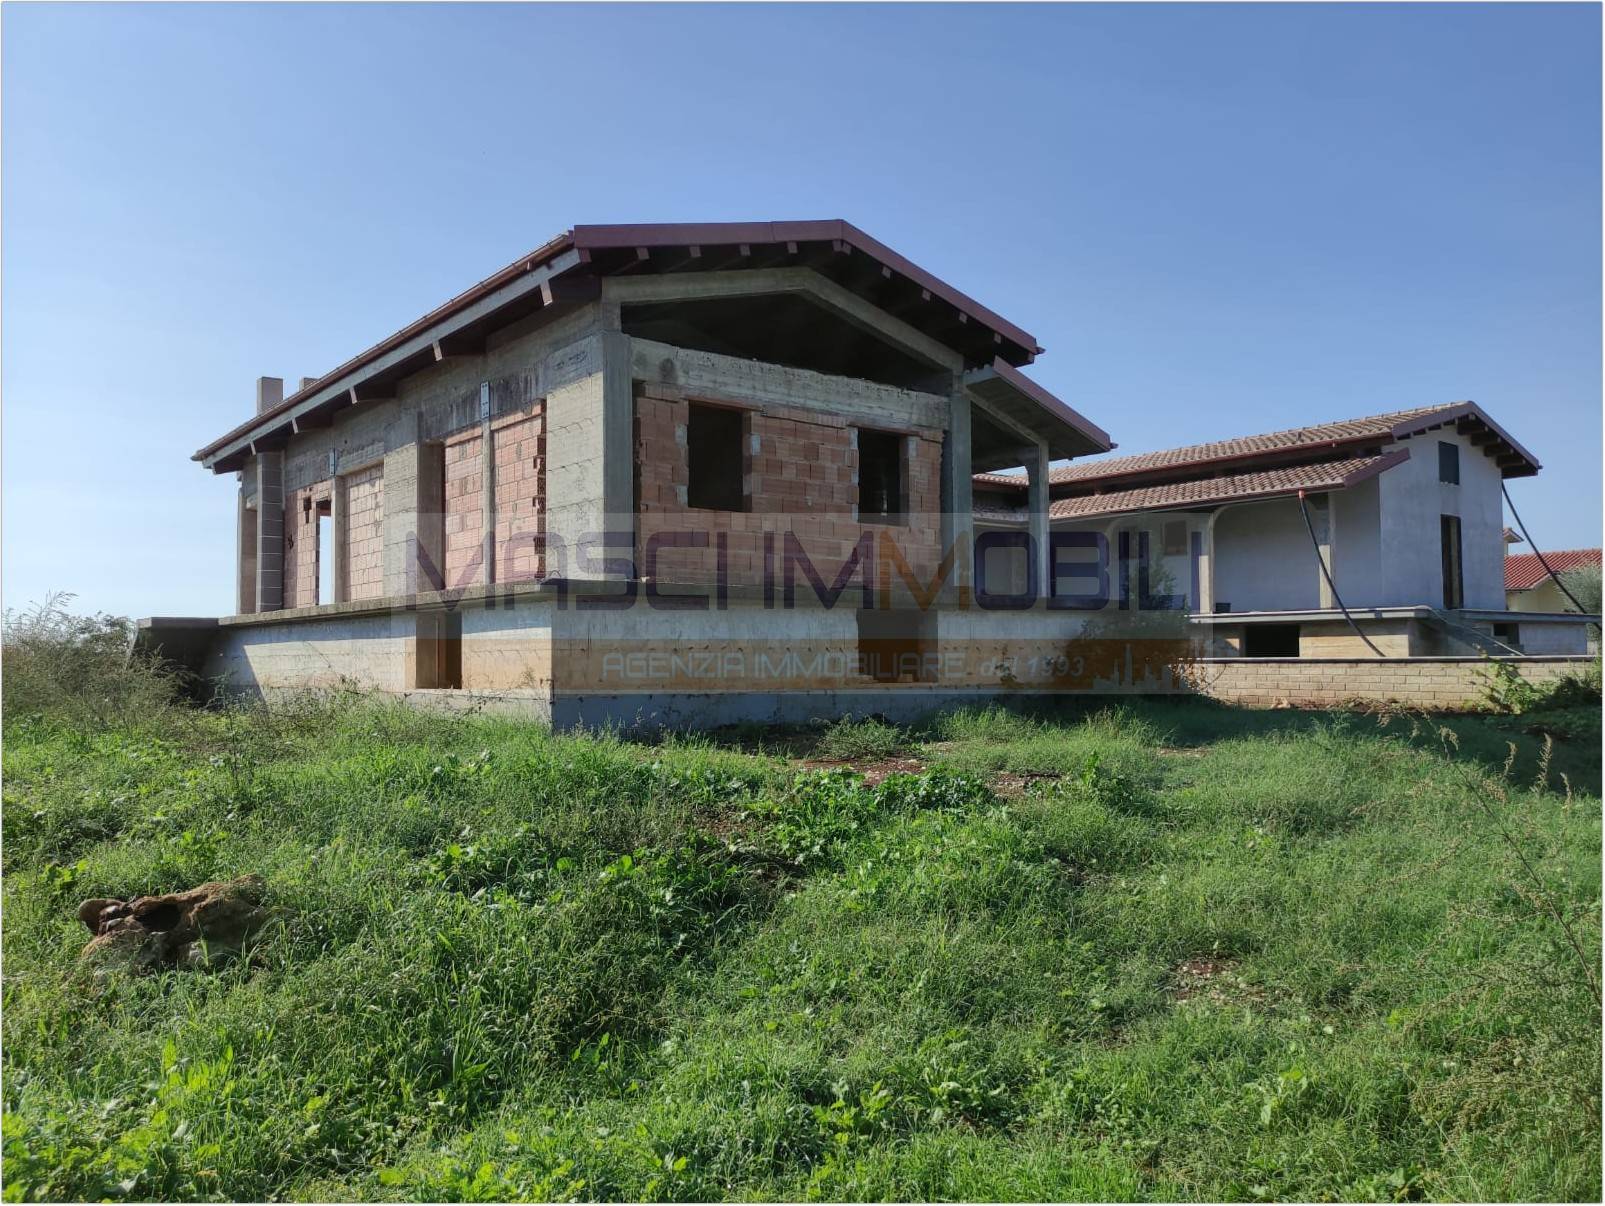 Villa in vendita a Fiano Romano, 6 locali, prezzo € 200.000 | CambioCasa.it